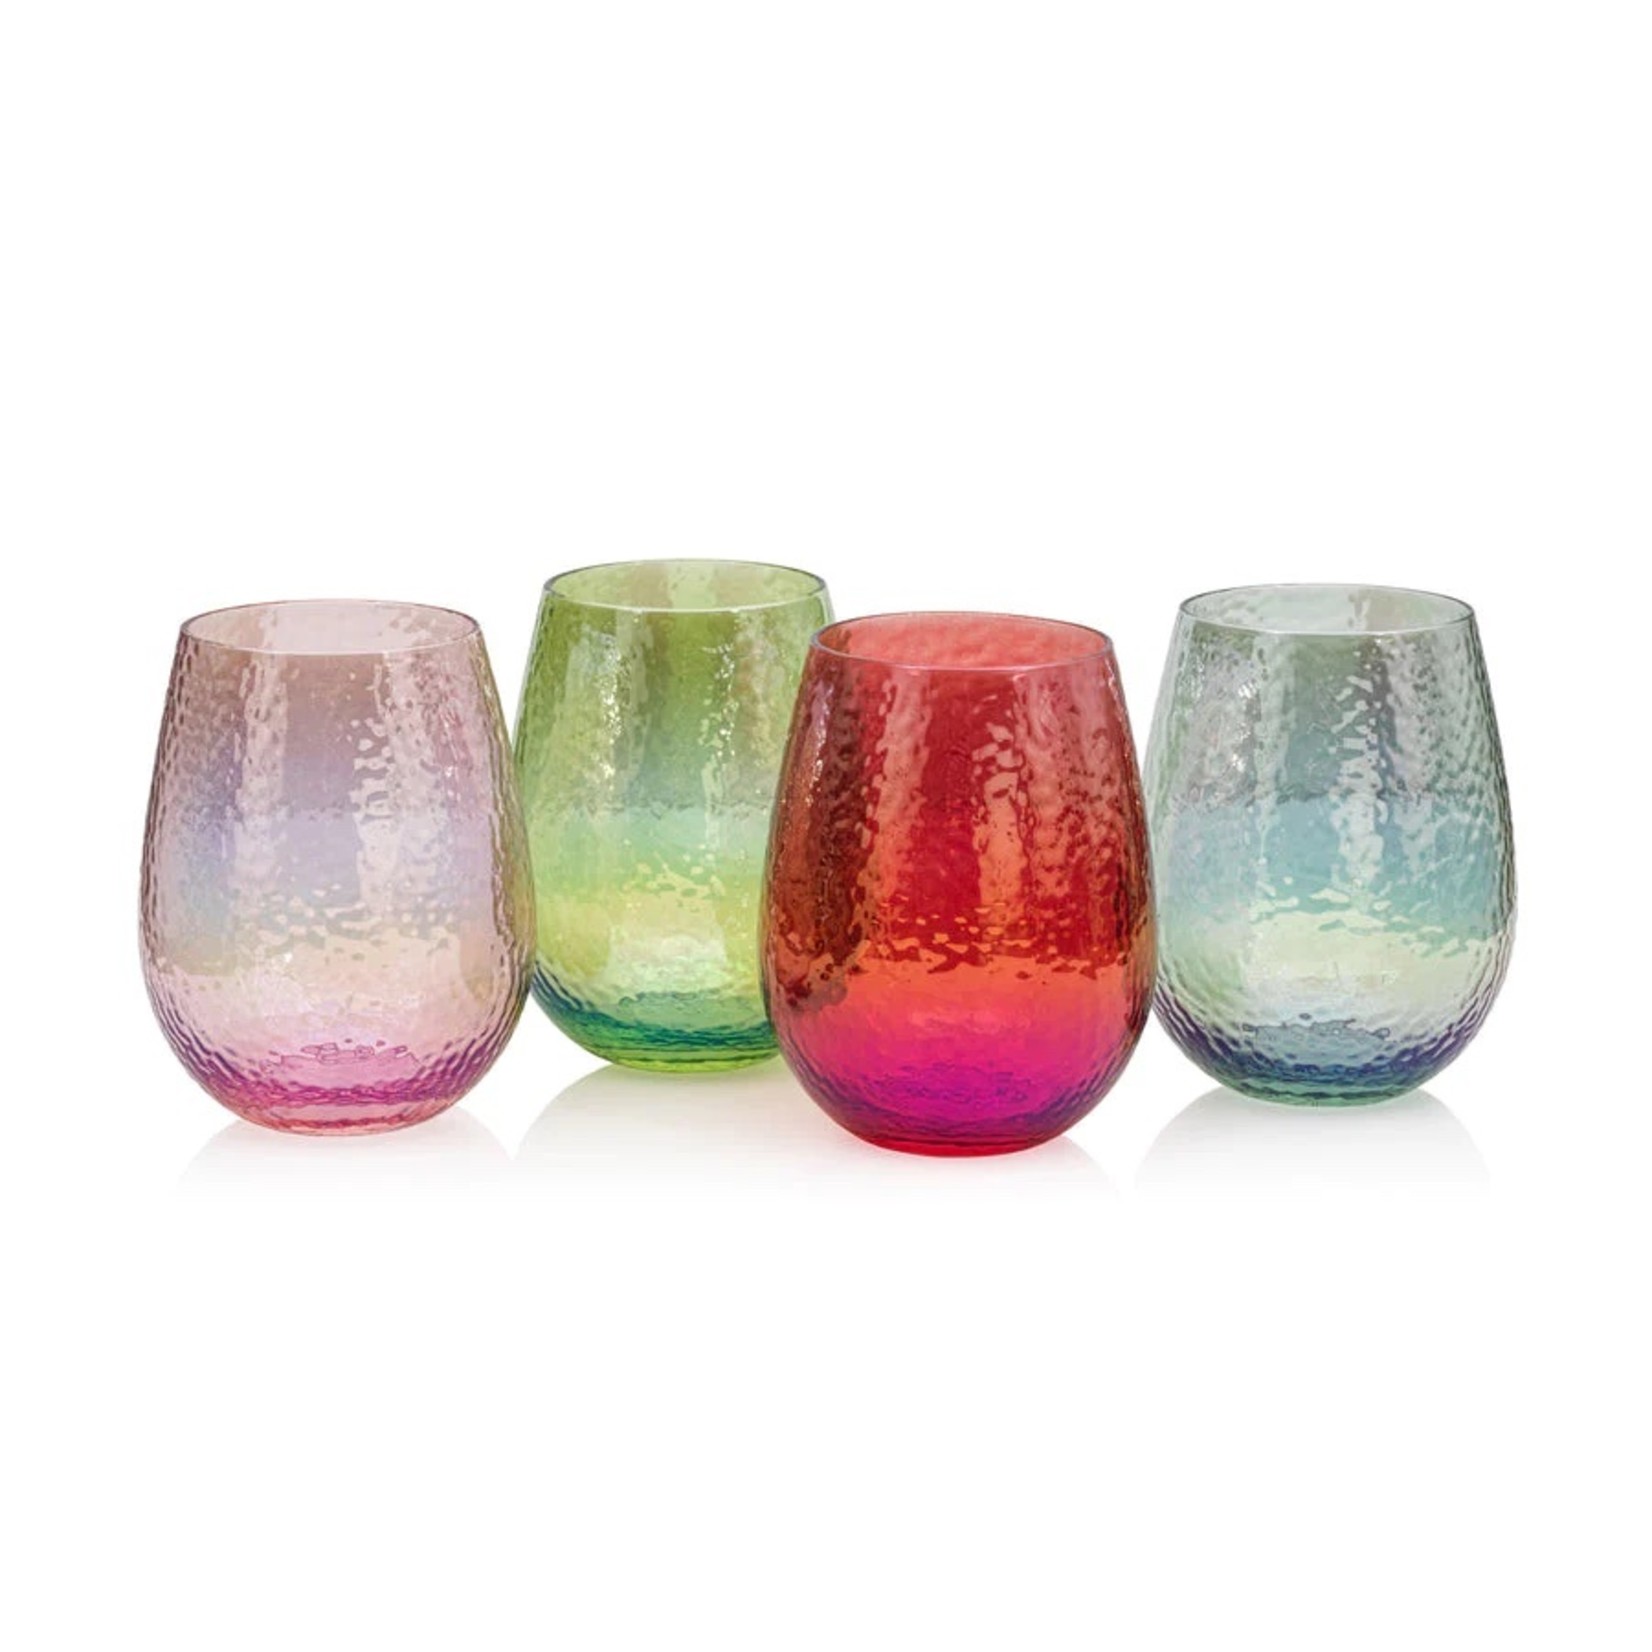 https://cdn.shoplightspeed.com/shops/644234/files/51768474/1652x1652x2/zodax-aperitivo-stemless-all-purpose-glass-luster.jpg